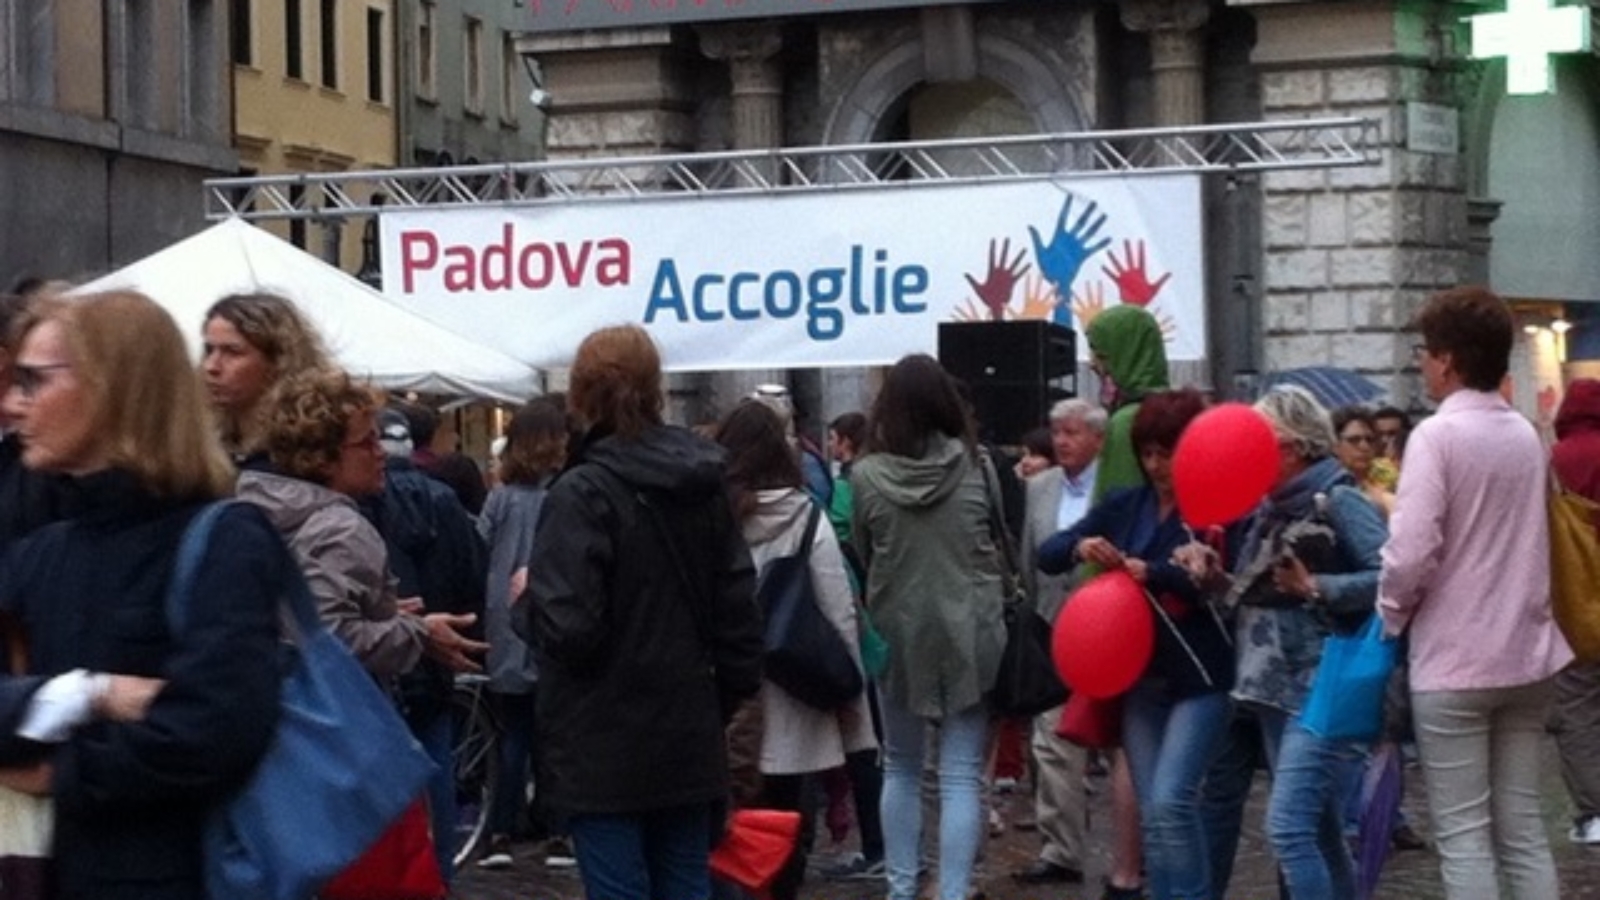 150511-Padova-accoglie-